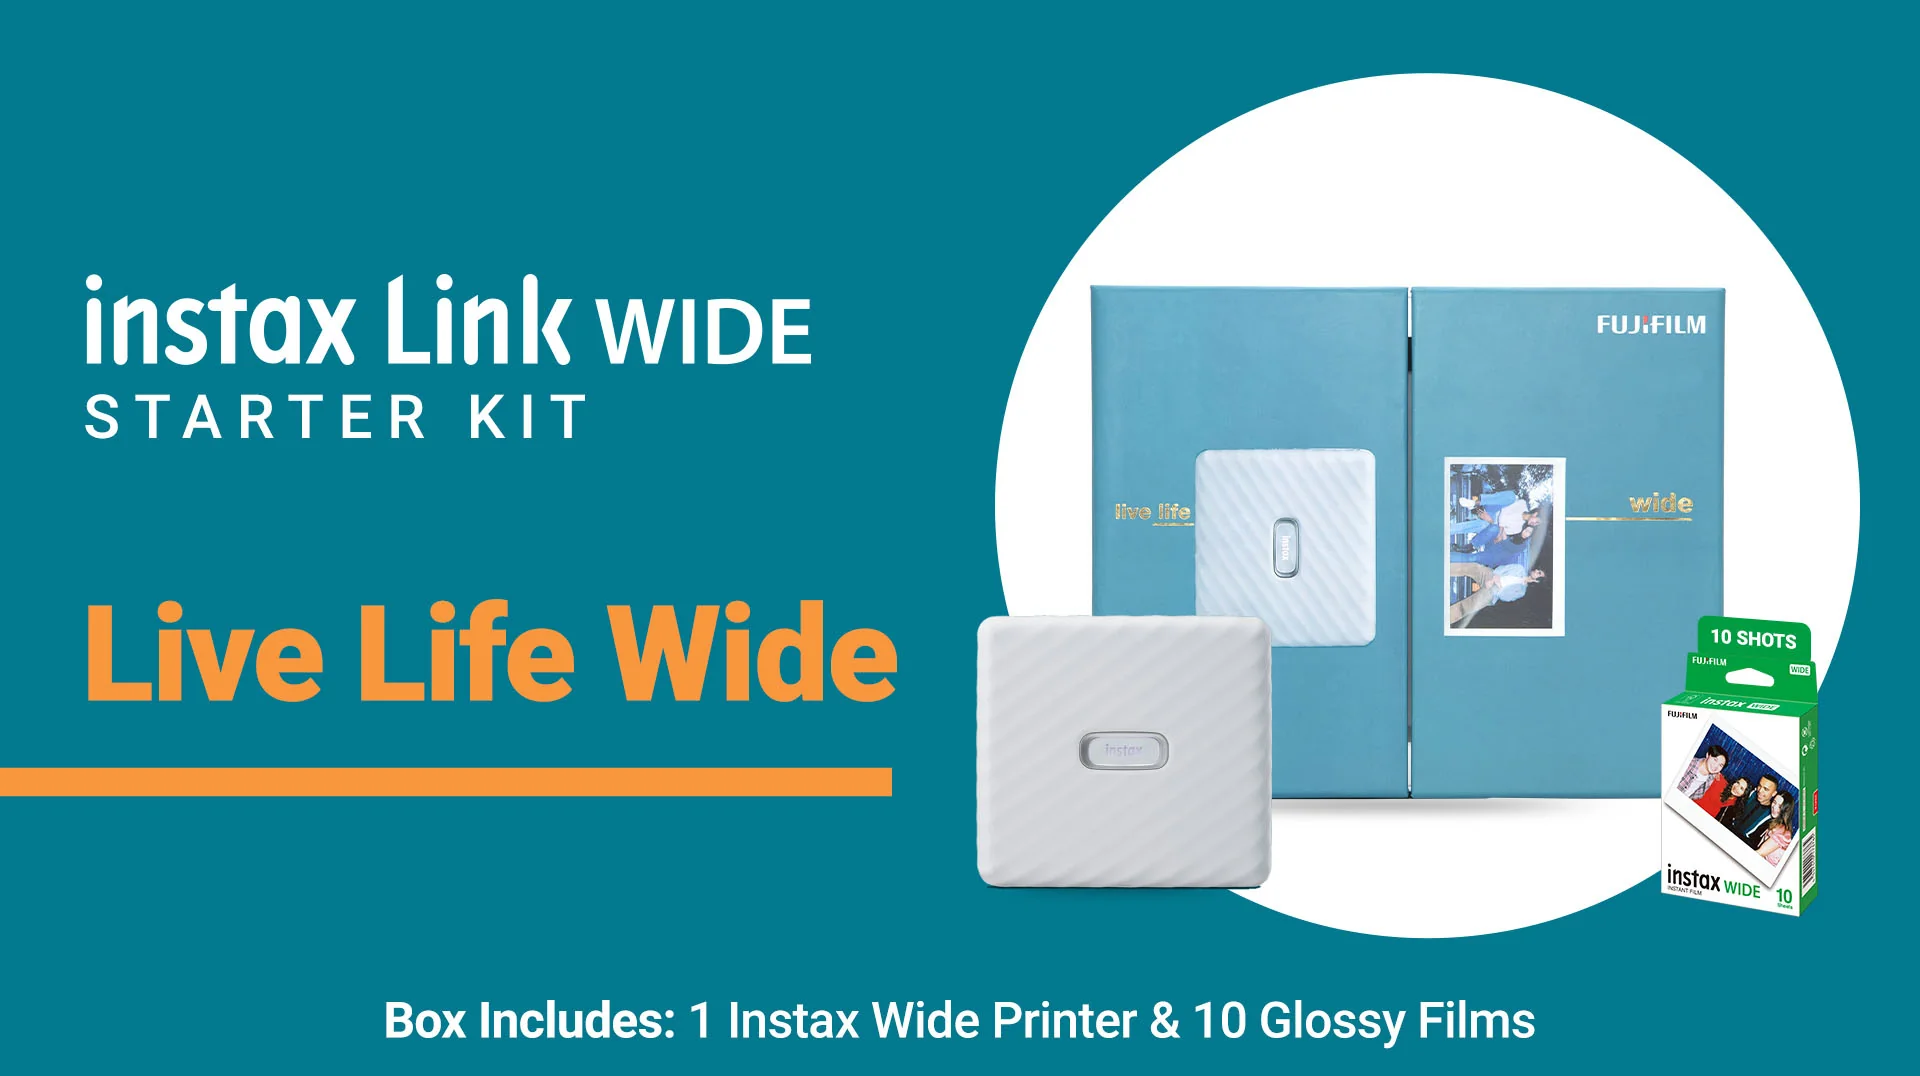 Instax Link WIDE Starter Kit